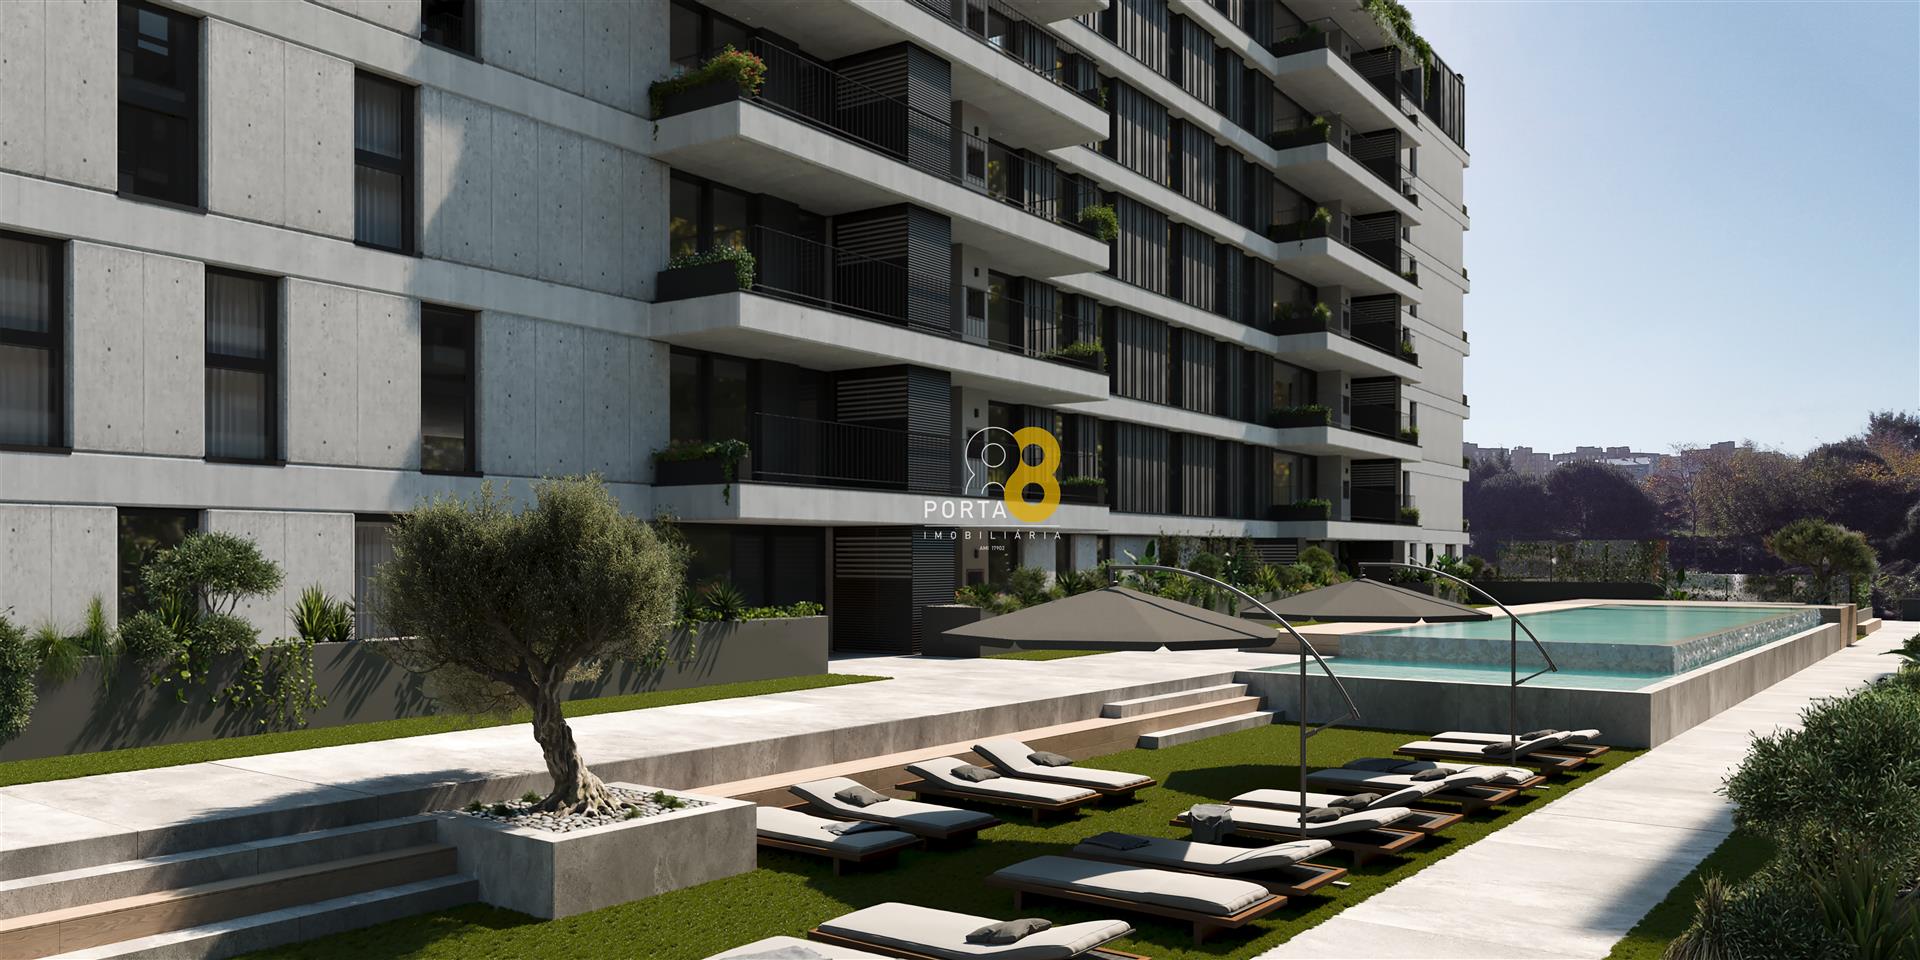 Wunderschönes T3 mit 3 Suiten, Balkon mit 50m2 und Garage für 2 Autos, Porto